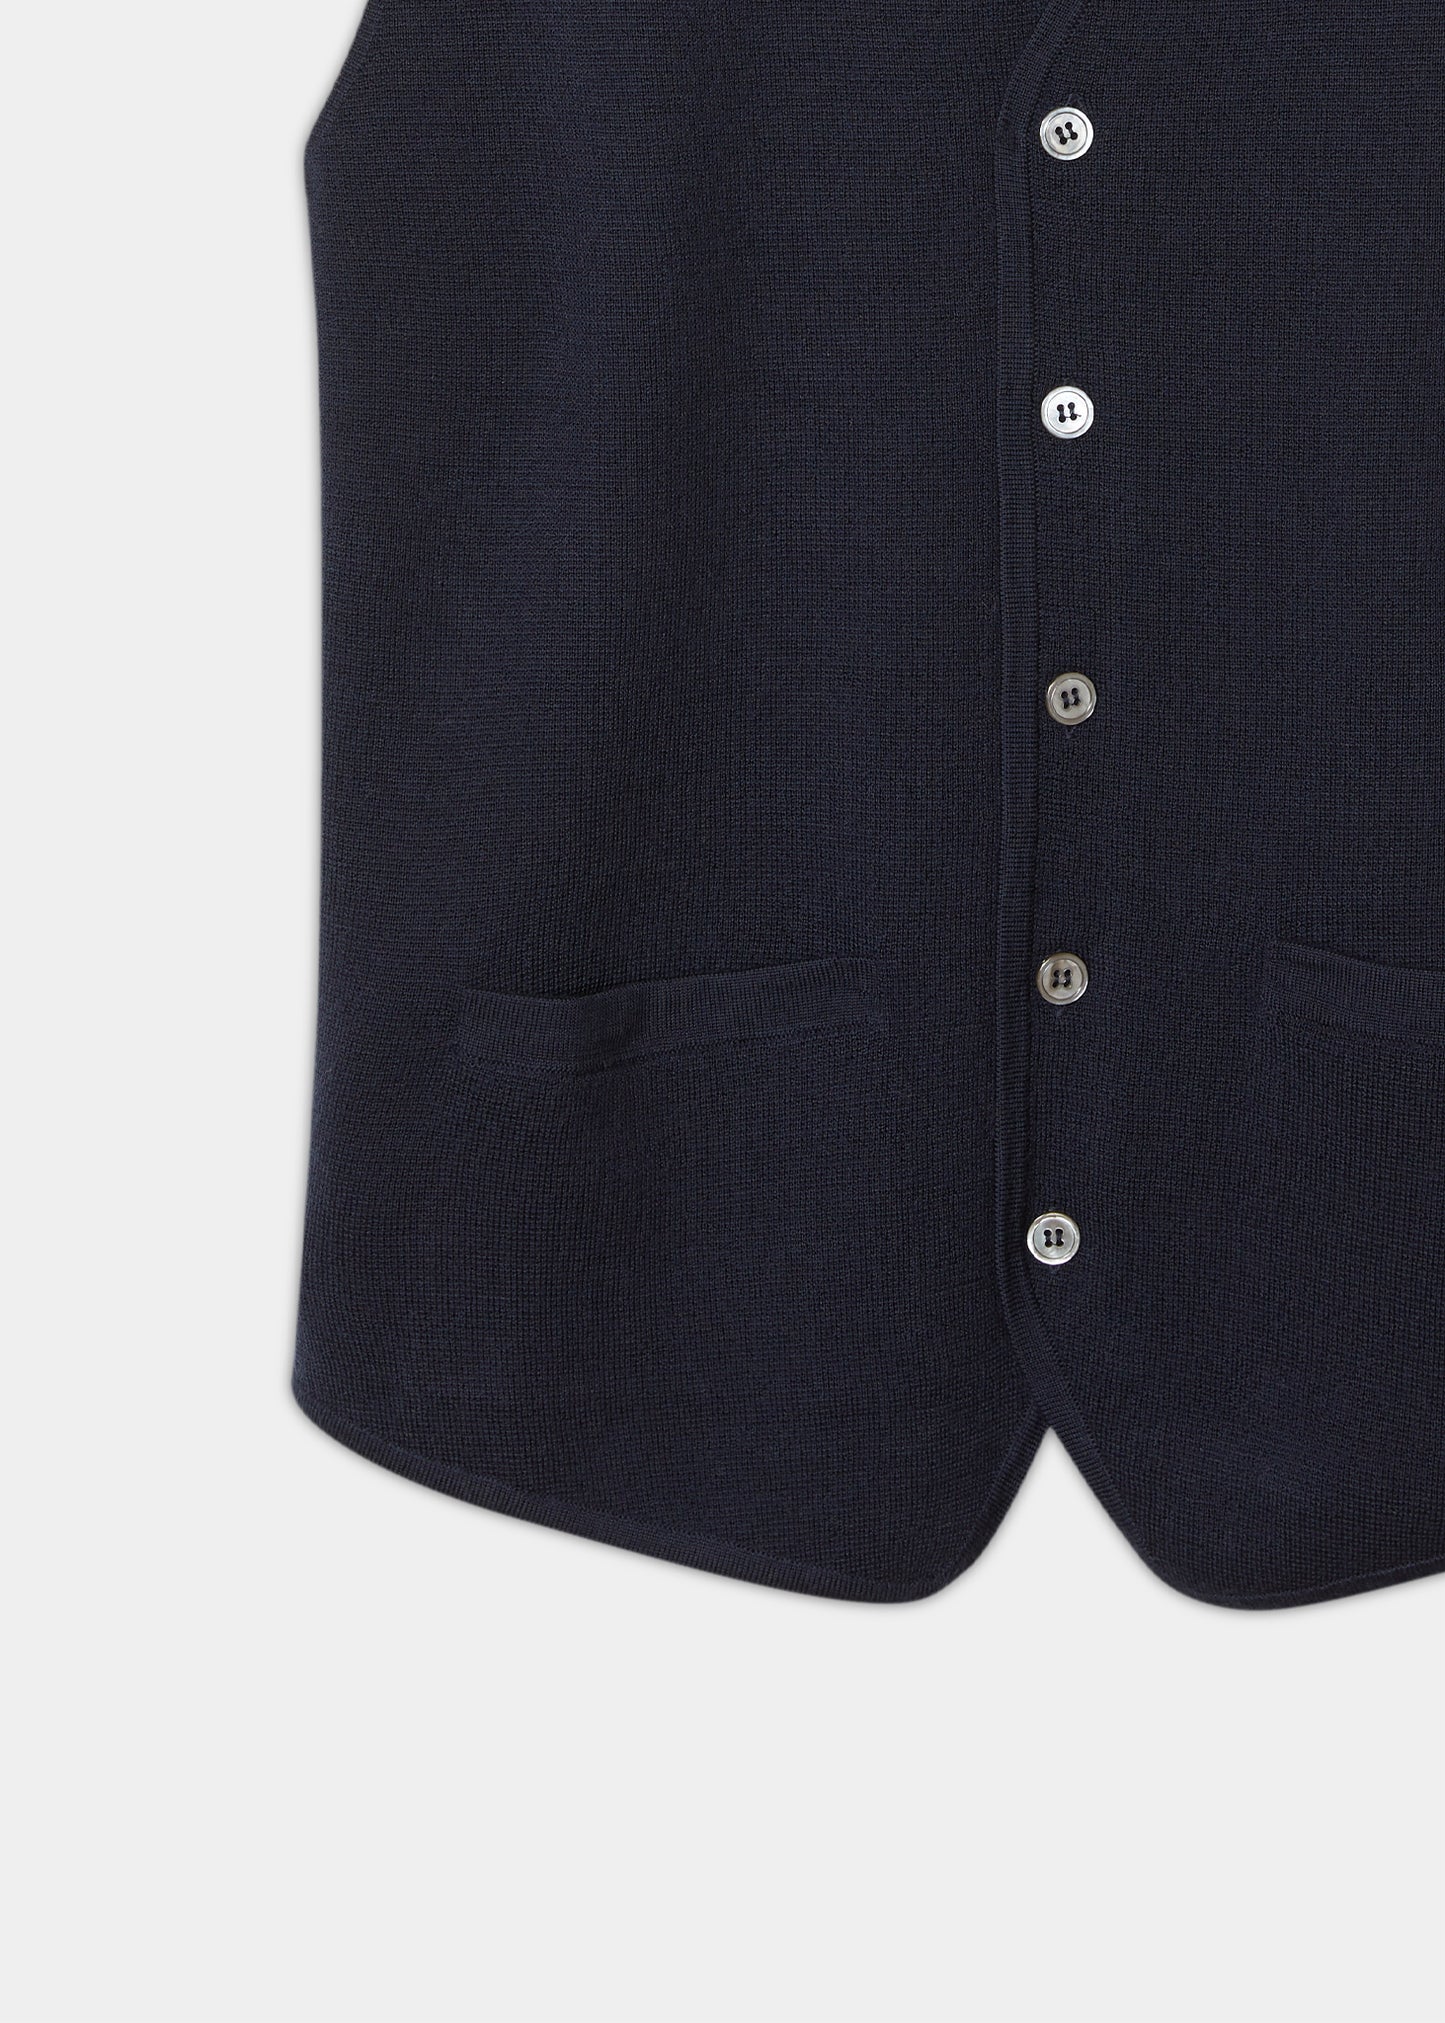 mens-merino-wool-tailored-waistcoat-dark-navy